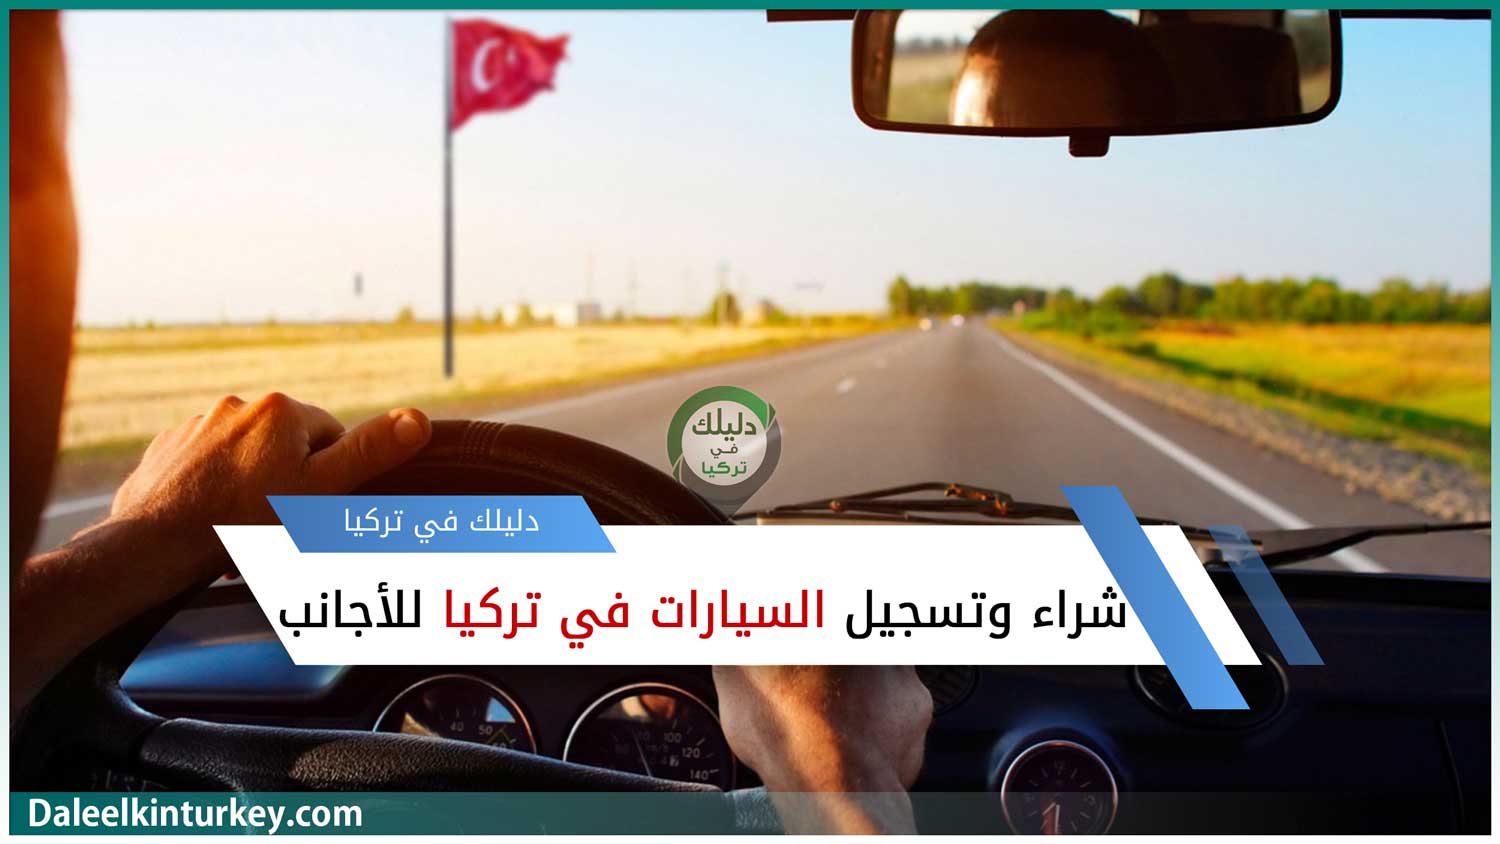 تعبيرية -شراء وتسجيل السيارات في تركيا للأجانب